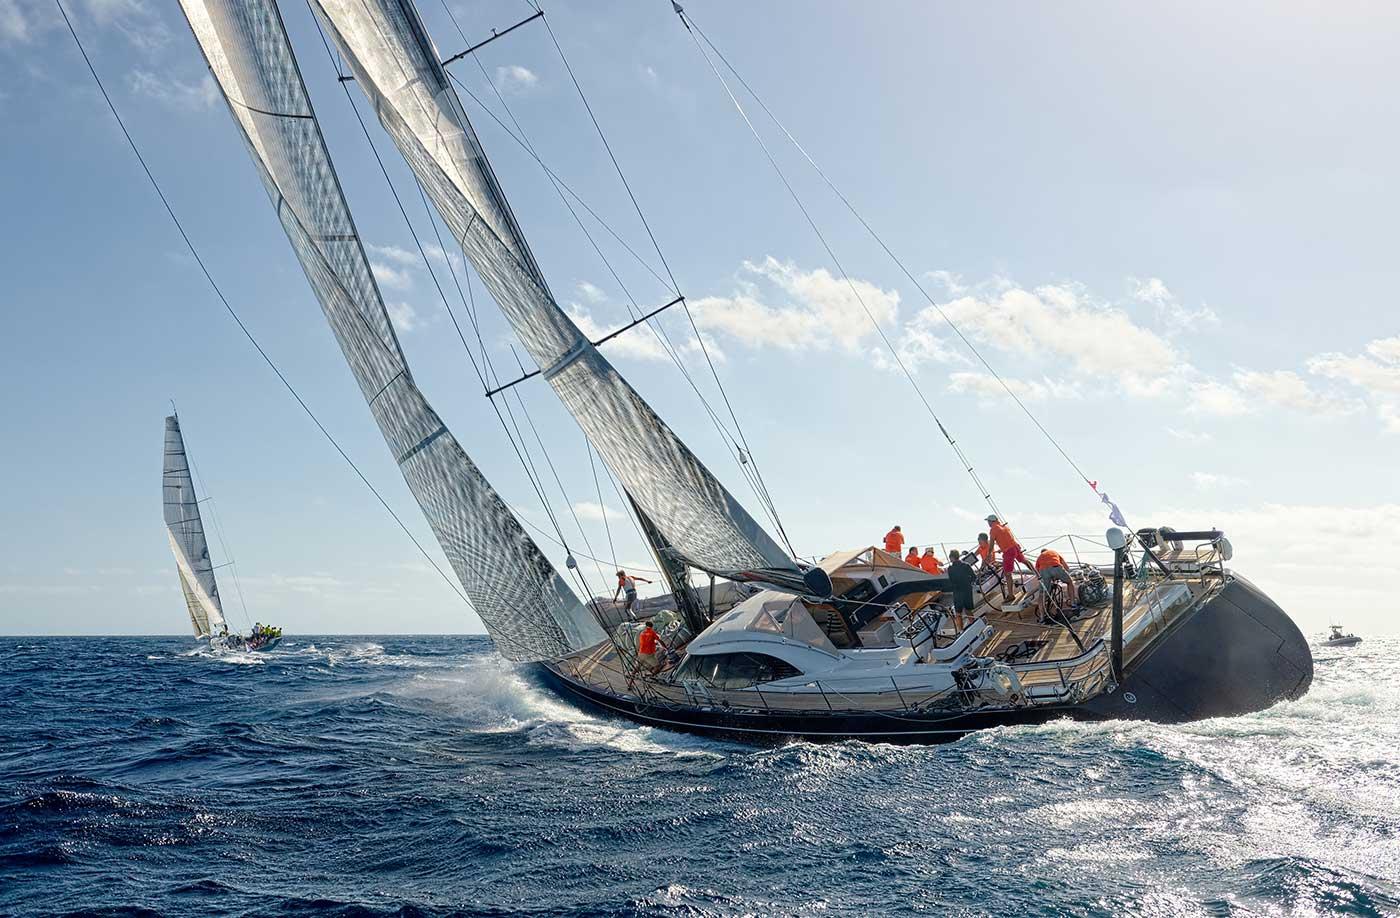 Sail racing in Mediterranean